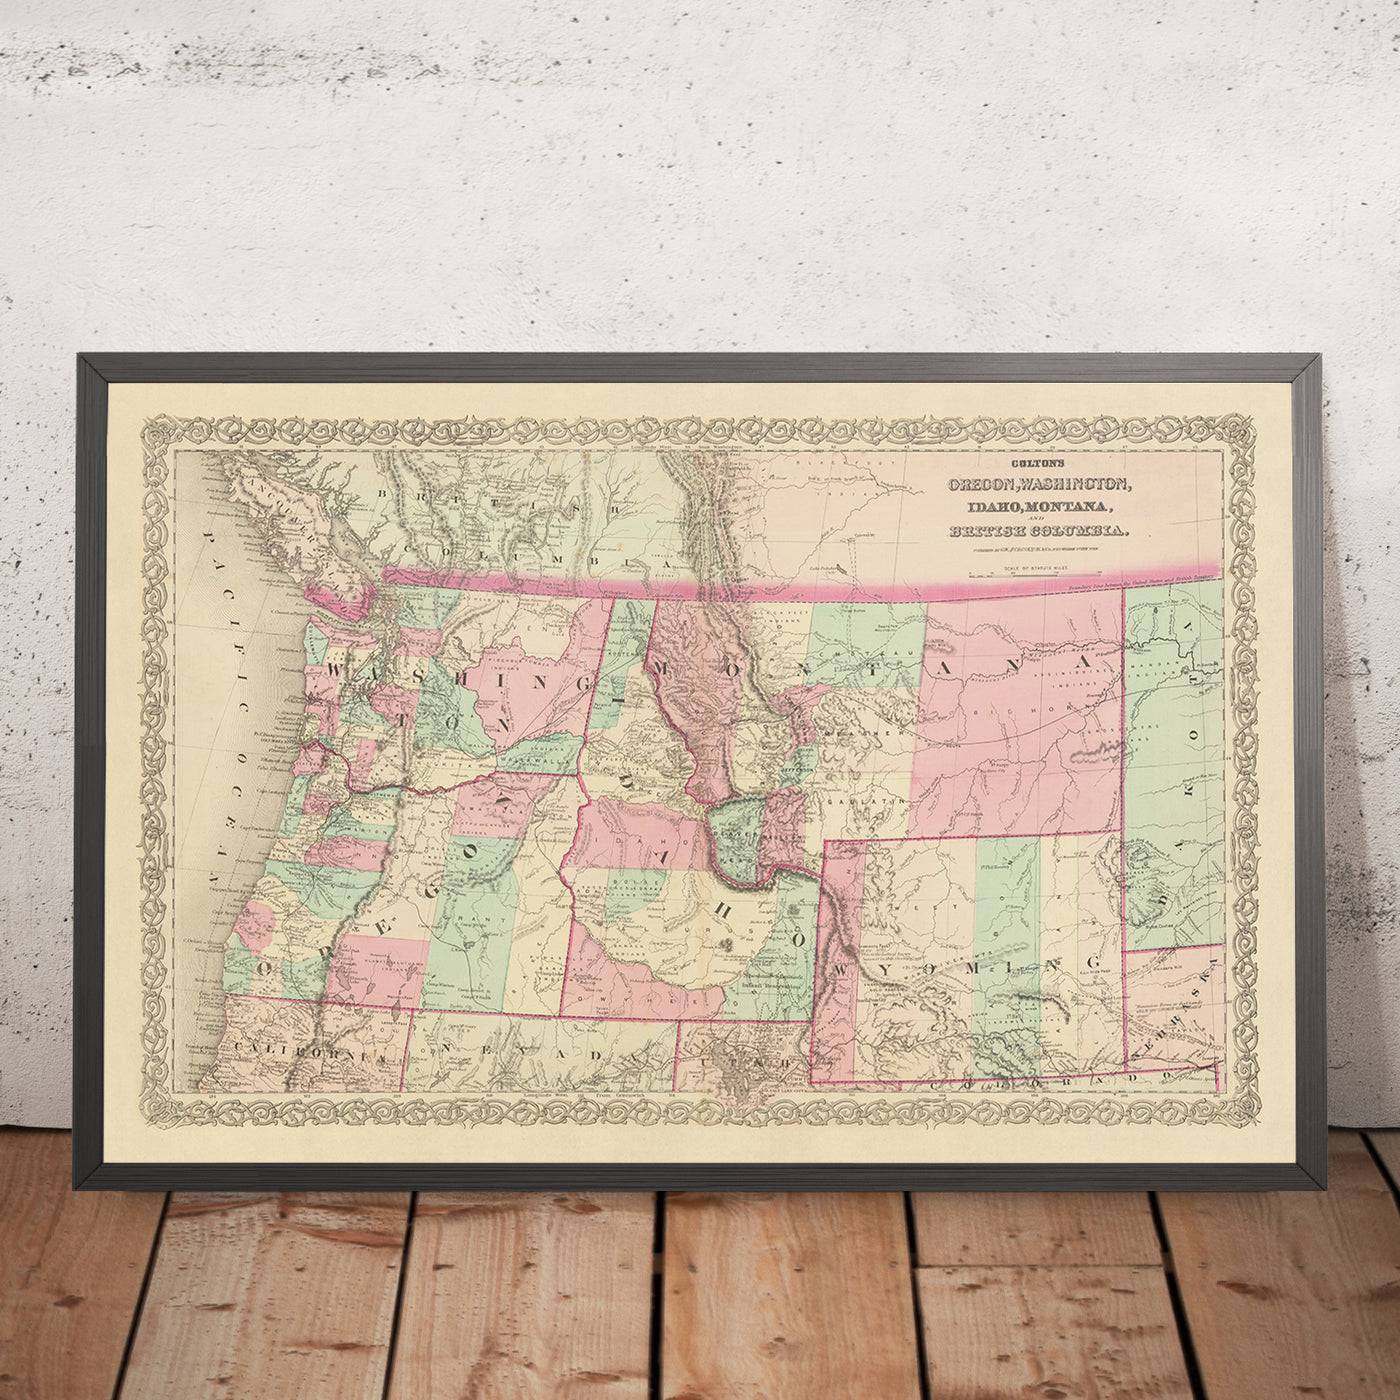 Alte Karte des pazifischen Nordwestens von JH Colton, 1868: Portland, Seattle, Boise, Helena, Cheyenne